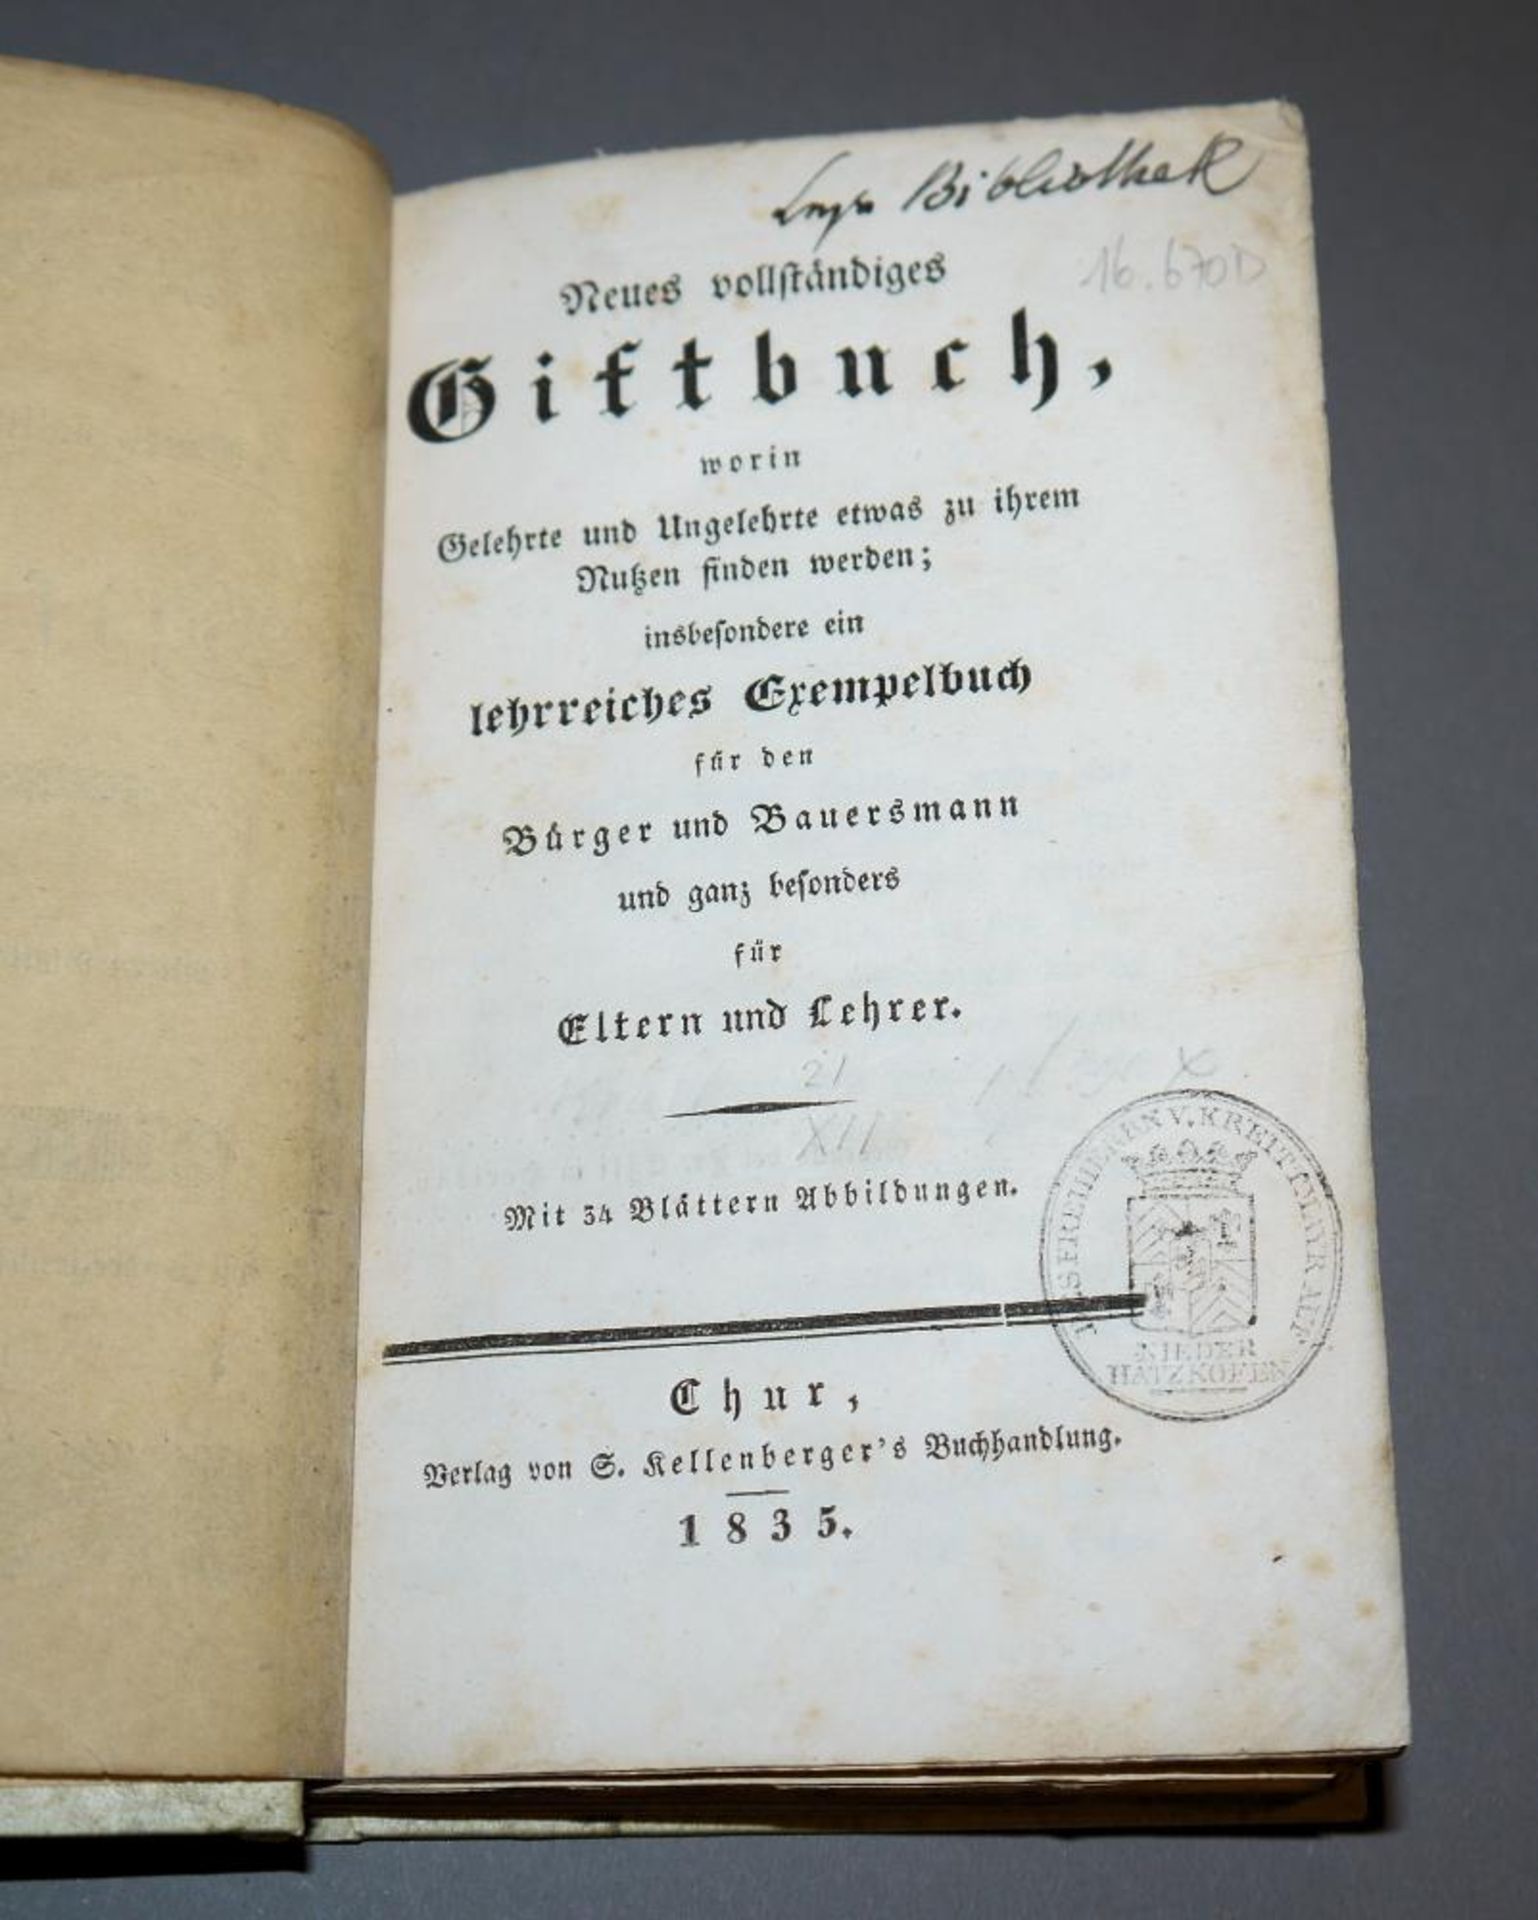 Antiquarisches Giftbuch, selten! J.G. Giezendanner, Neues vollständiges Giftbuch, worin Gelehrte und